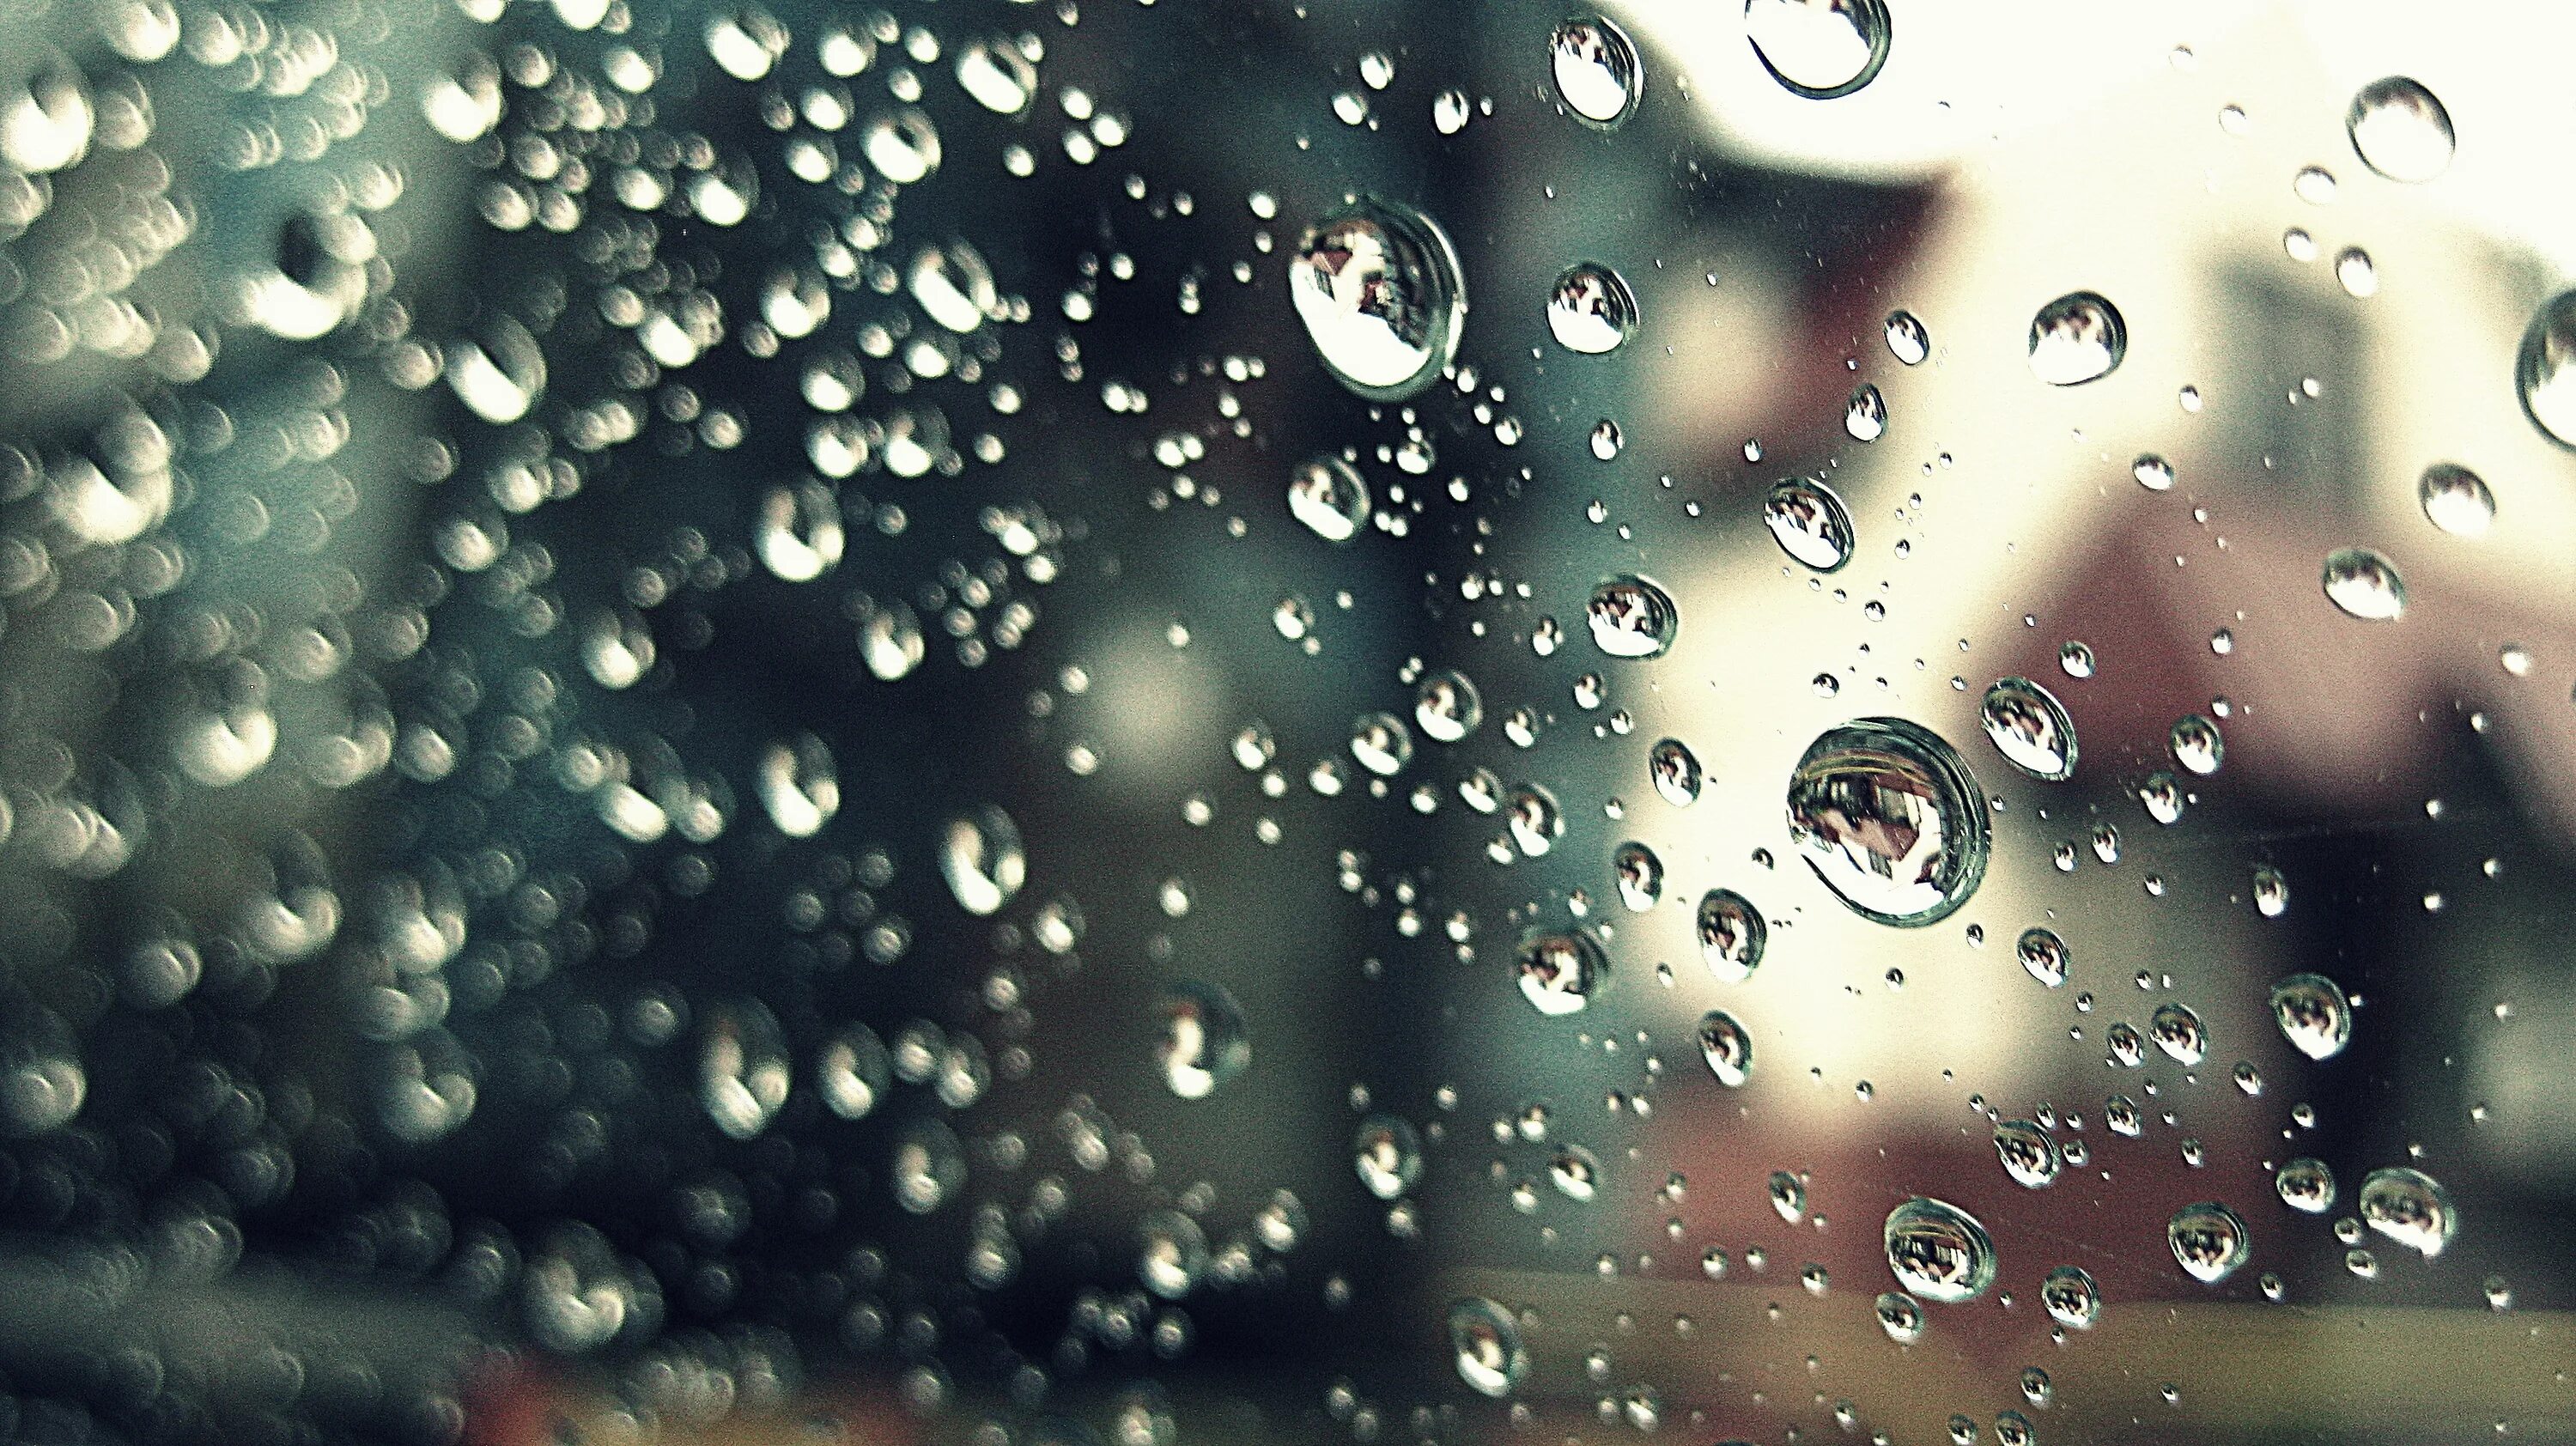 Капли жемчужные капли прекрасные. Вид из окна с каплями дождя. Обои для вотцапа капли за окном. Солнечная погода через стекло фон.